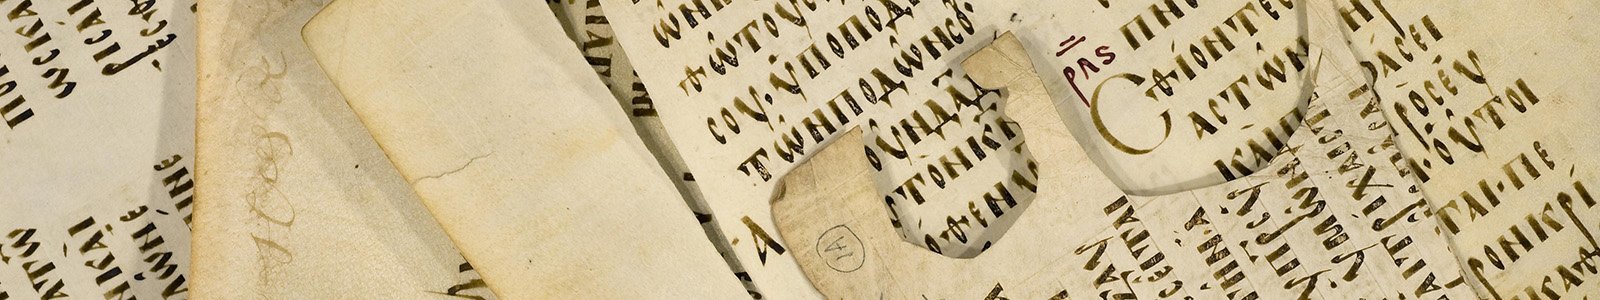 De Codex Boreelianus, handschrift 1 uit de Bijzondere Collecties van de Universiteitsbibliotheek Utrecht